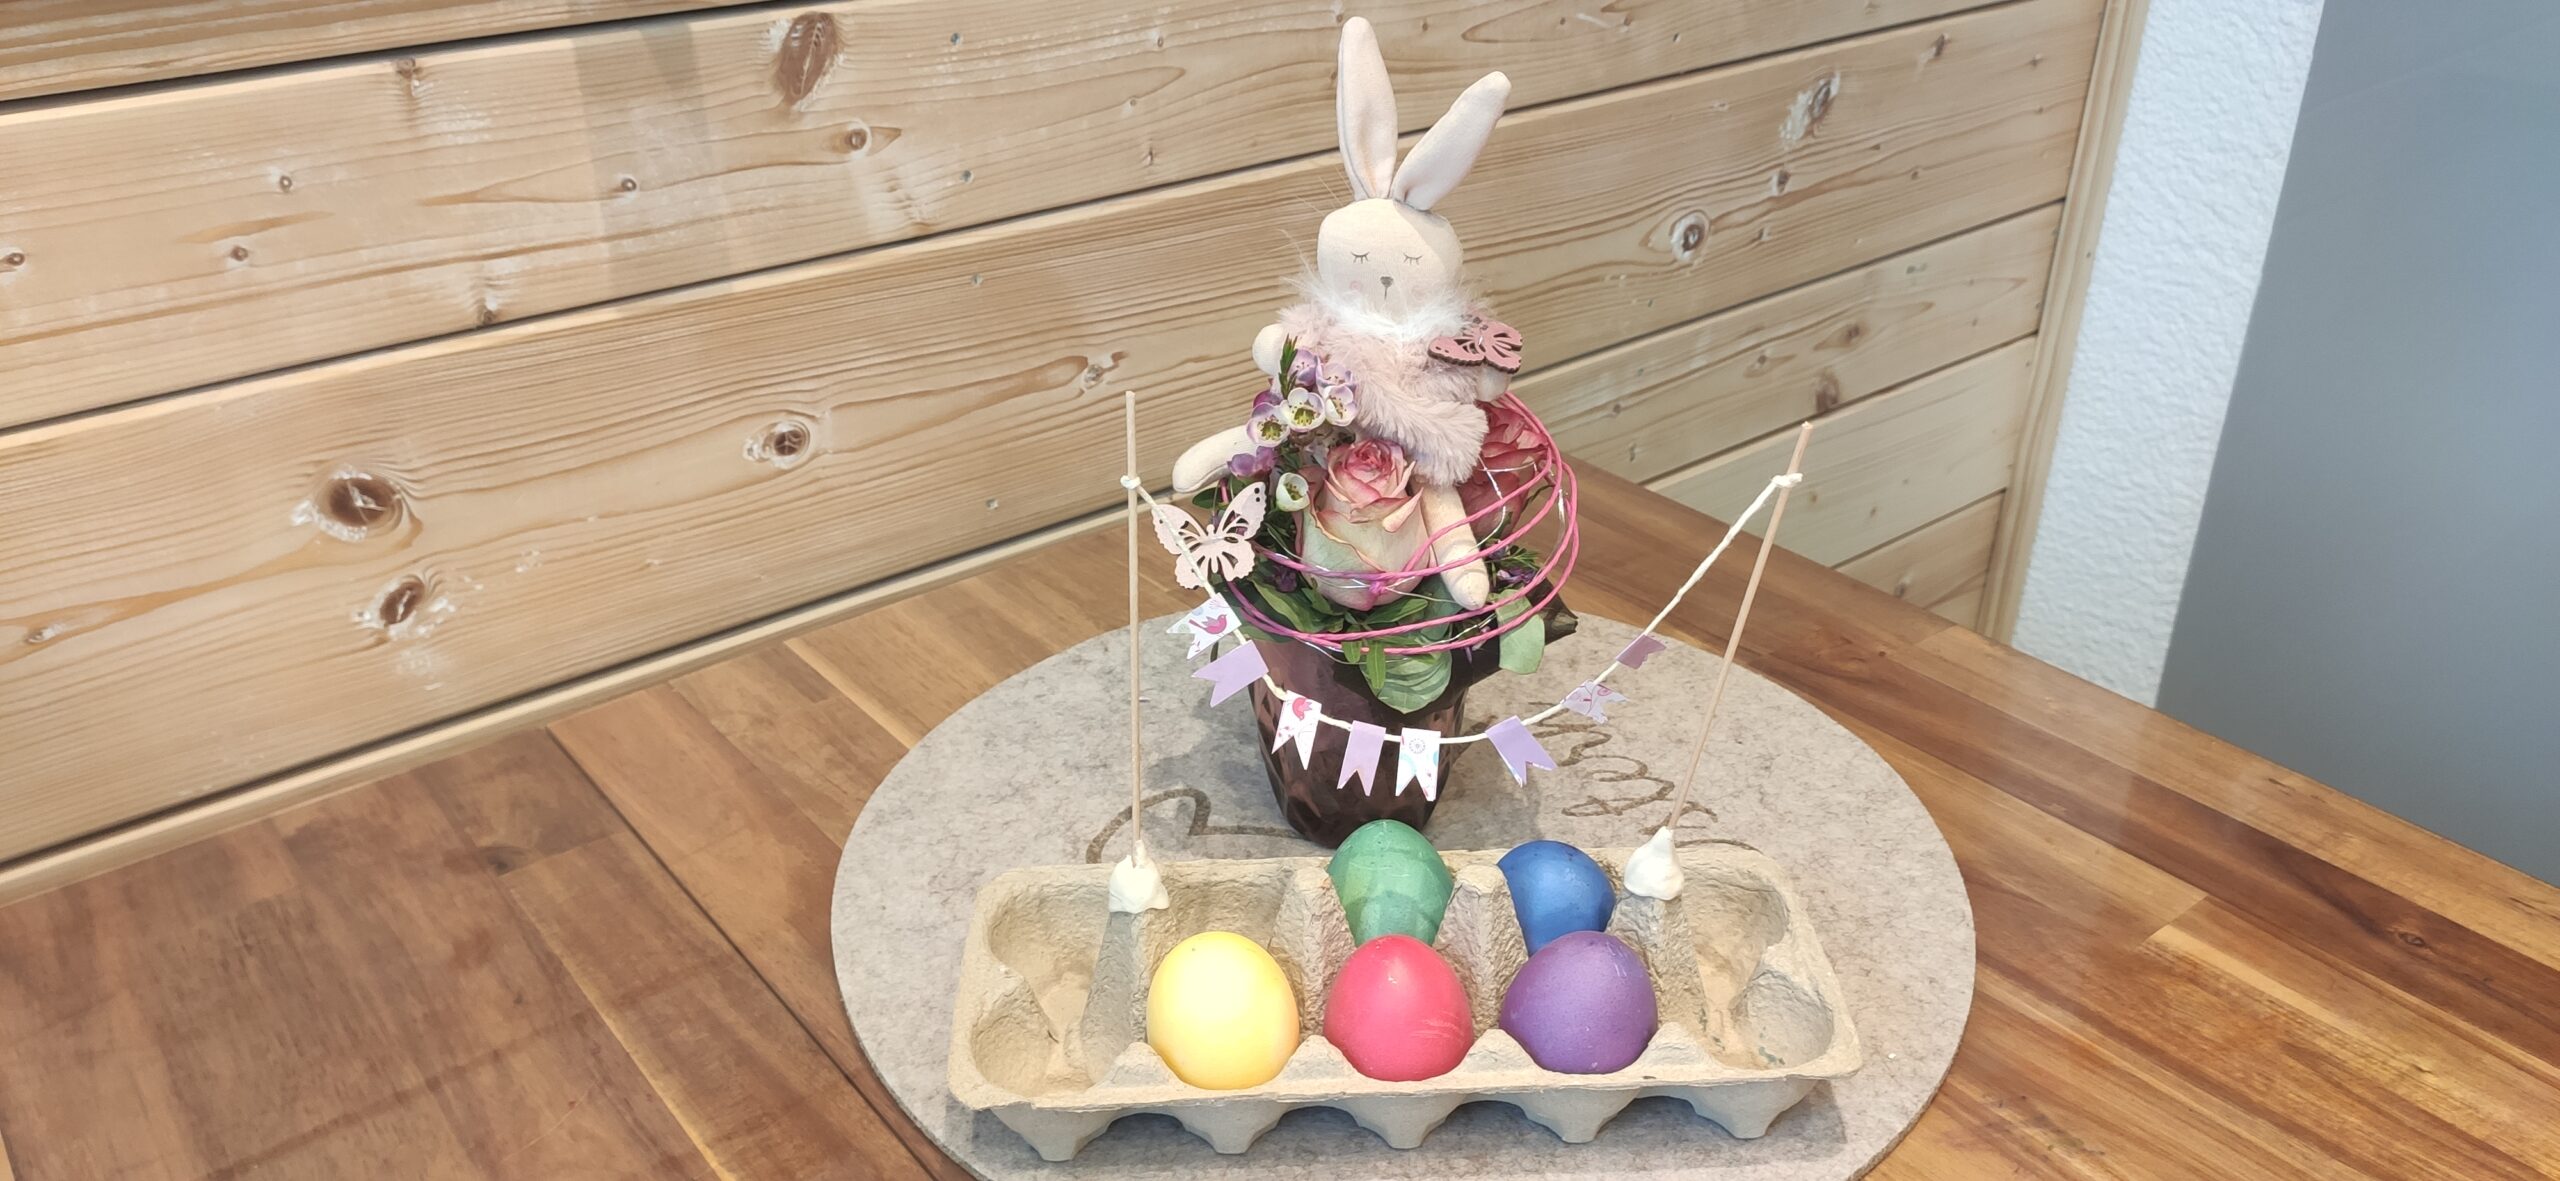 Bild zum Schritt 11 für das Bastel- und DIY-Abenteuer für Kinder: 'Sobald die Eier getrocknet sind dekoriert ihr damit den Ostertisch...'